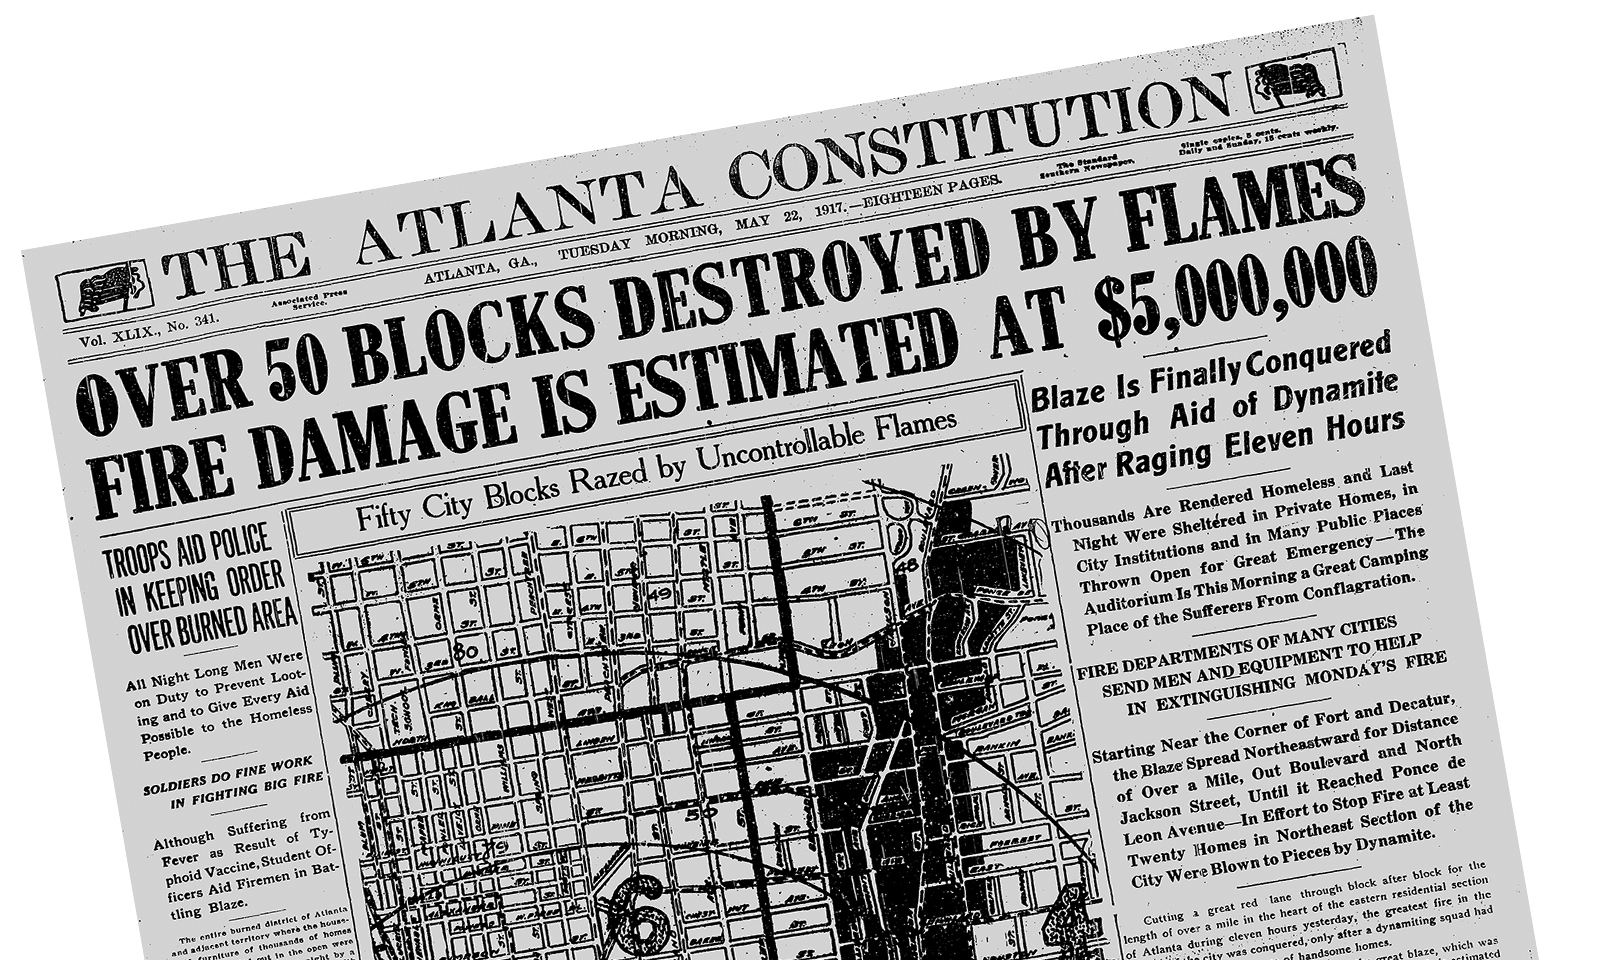 Atlanta Journal-Constitution 